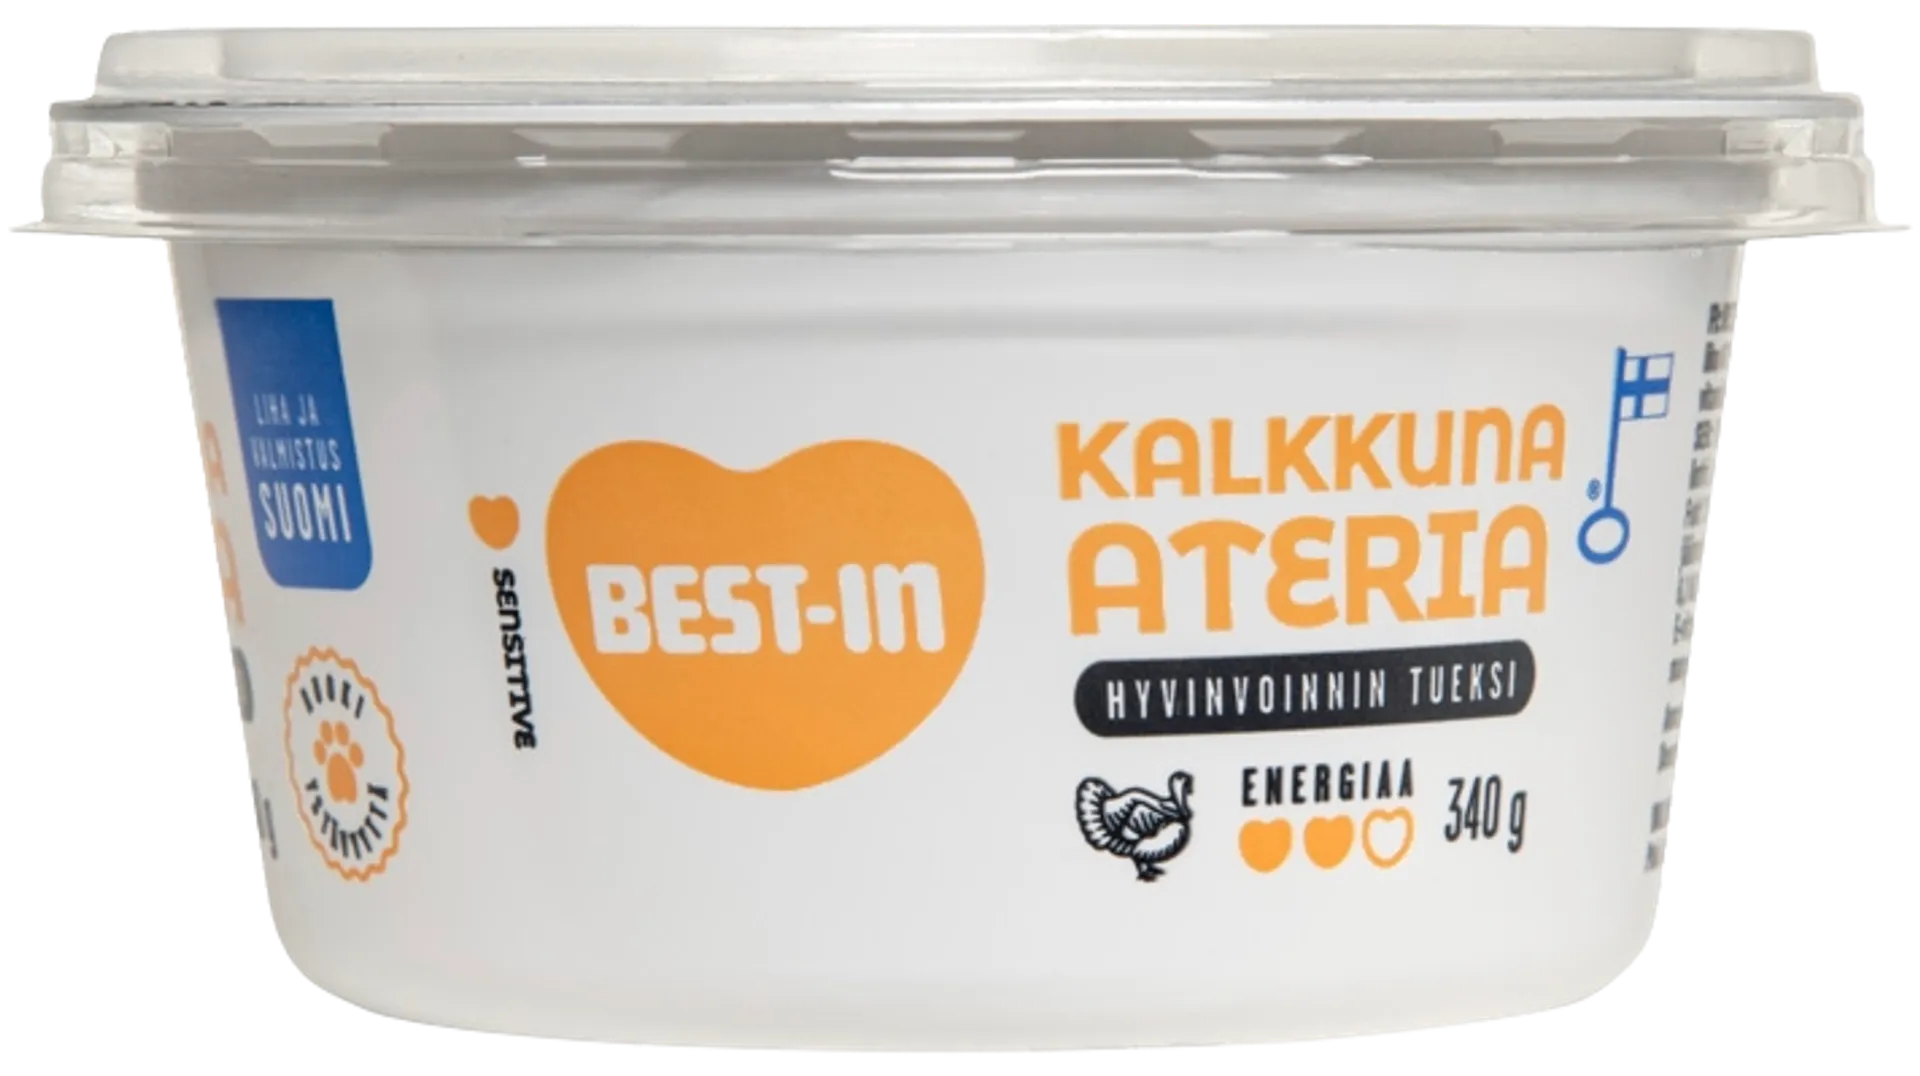 Best-In Kalkkuna-ateria Koiran Tuoreruoka 340g